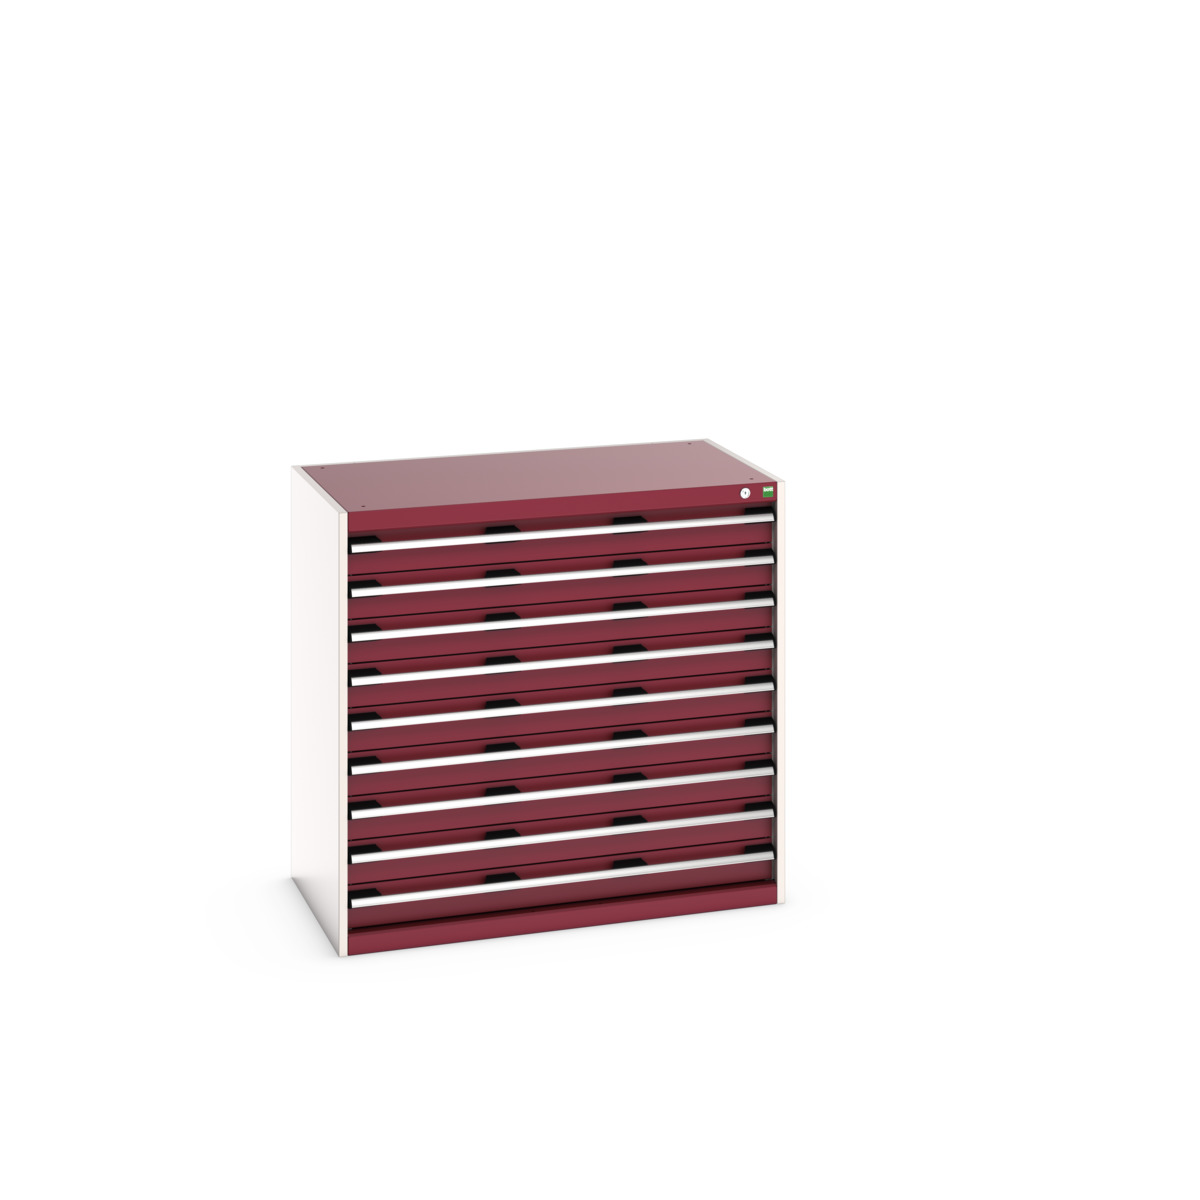 40021035.24V - cubio drawer cabinet